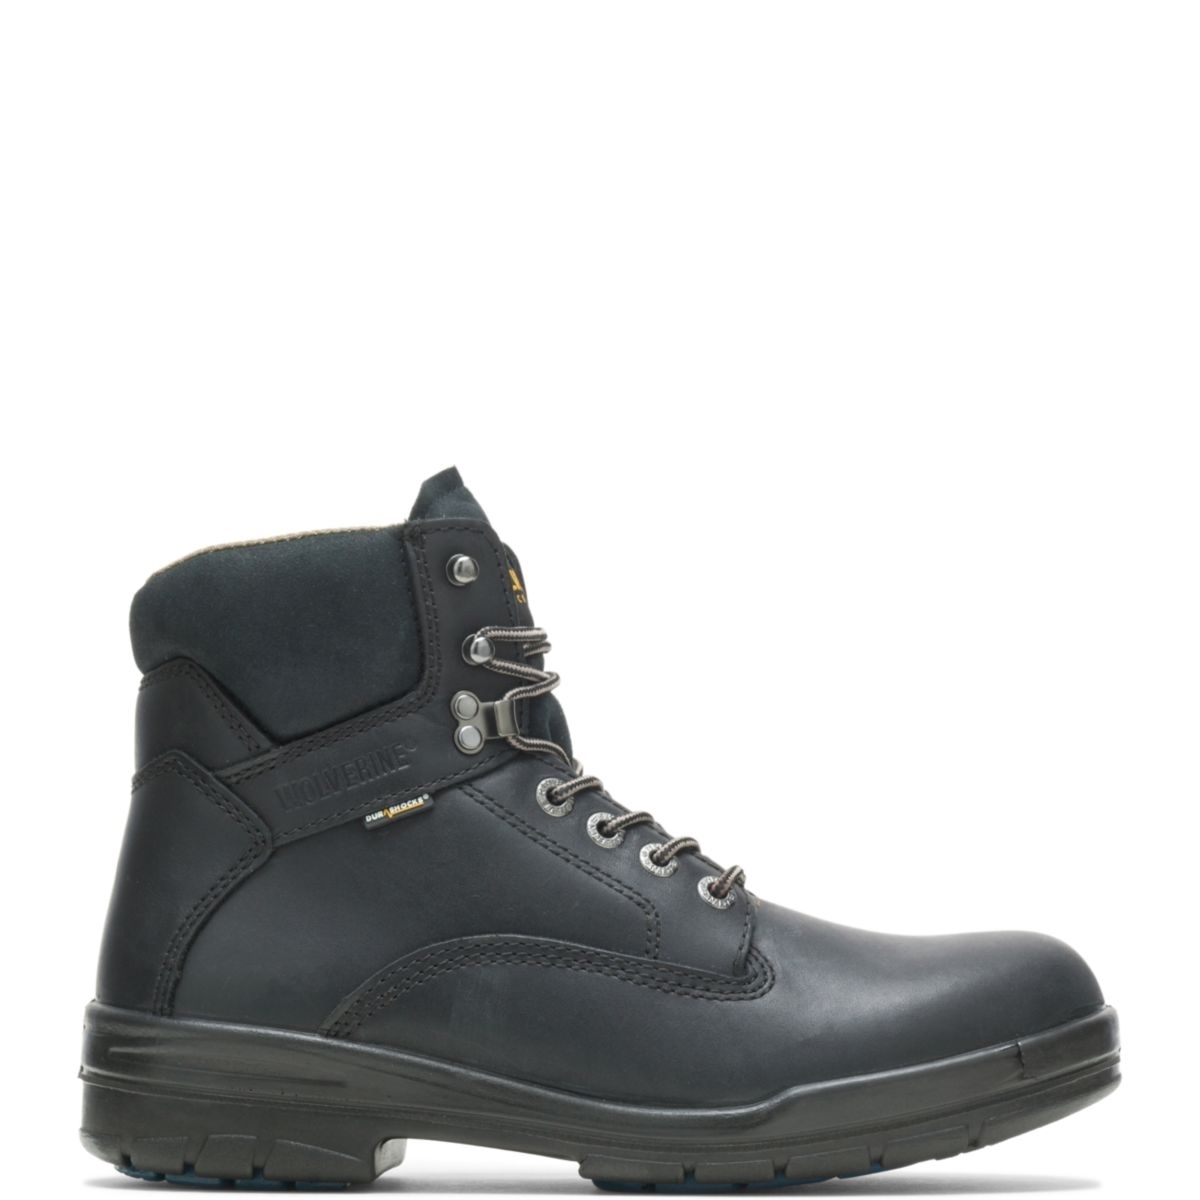 WOLVERINE Men's 6 DuraShocksÂ® Slip Resistant Direct-Attached Lined Soft Toe Work Boot Black - W03123 14 WIDE BLACK - BLACK, 8.5